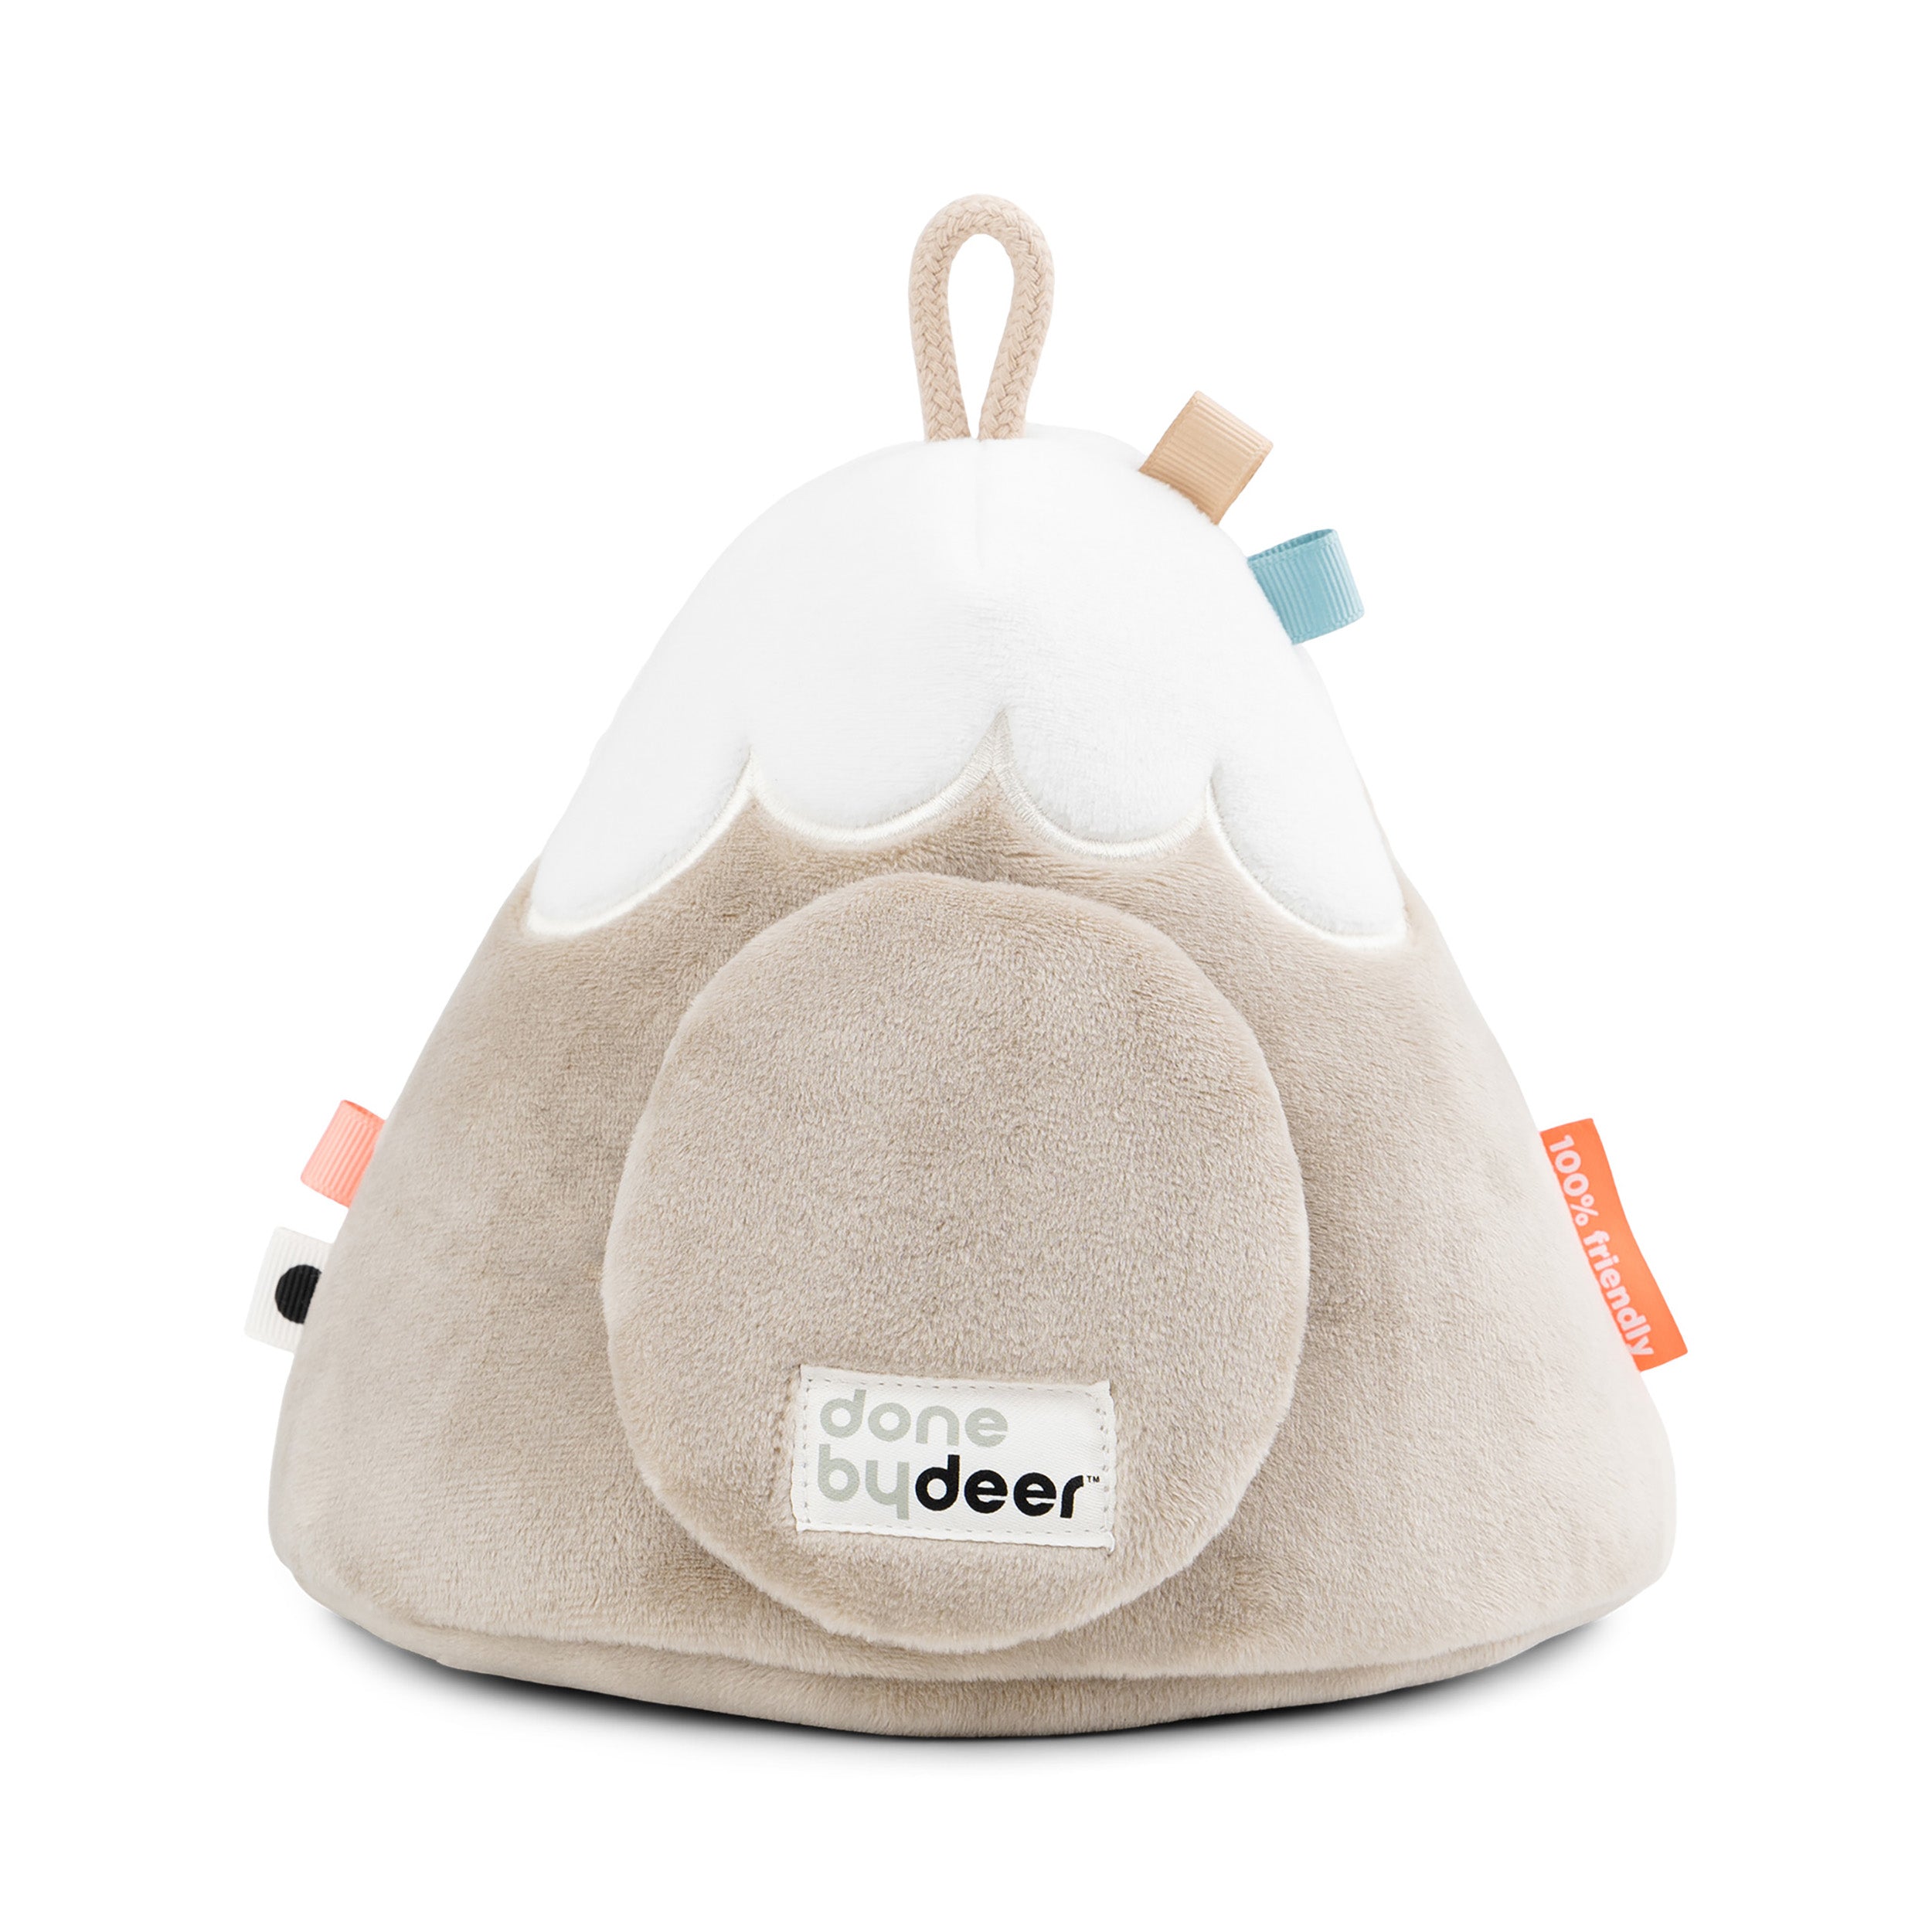 Herring & Bones - Concept Store Joyeux - Done By Deer - Peluches et Jouets - Jouet d'éveil Lalee Montagne